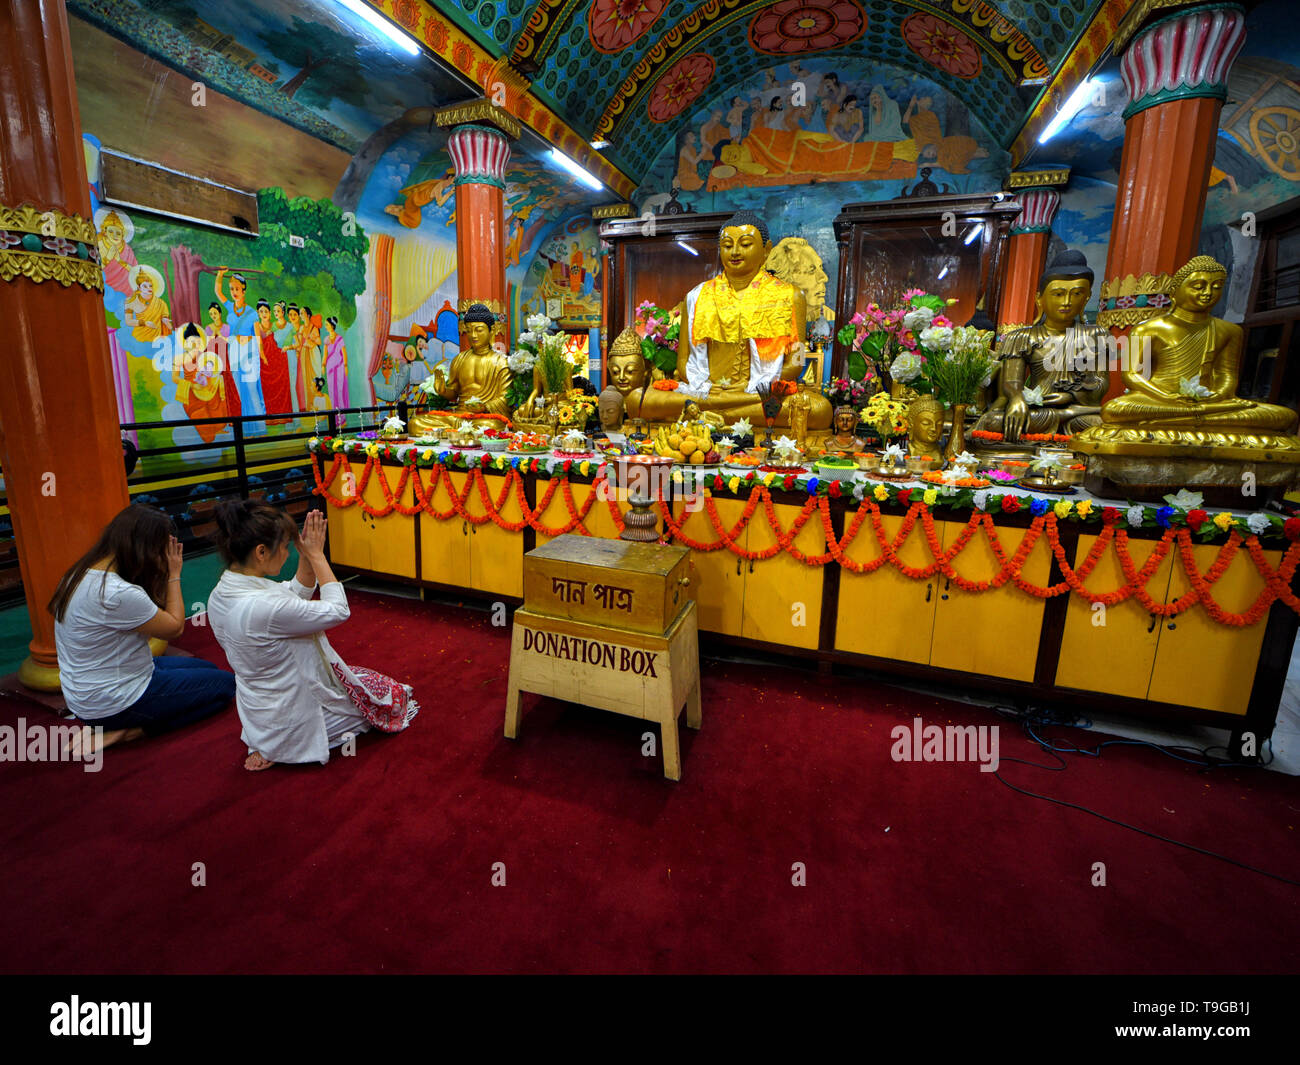 Devoti buddisti sono visti pregare davanti alla statua di Buddha Signore durante il Buddha Purnima preghiere. Il Buddha il compleanno è una vacanza tradizionalmente celebrato nella maggior parte dell Asia orientale per commemorare la nascita del Principe Siddharta Gautama o Gautama Buddha che è il fondatore del buddhismo. Foto Stock